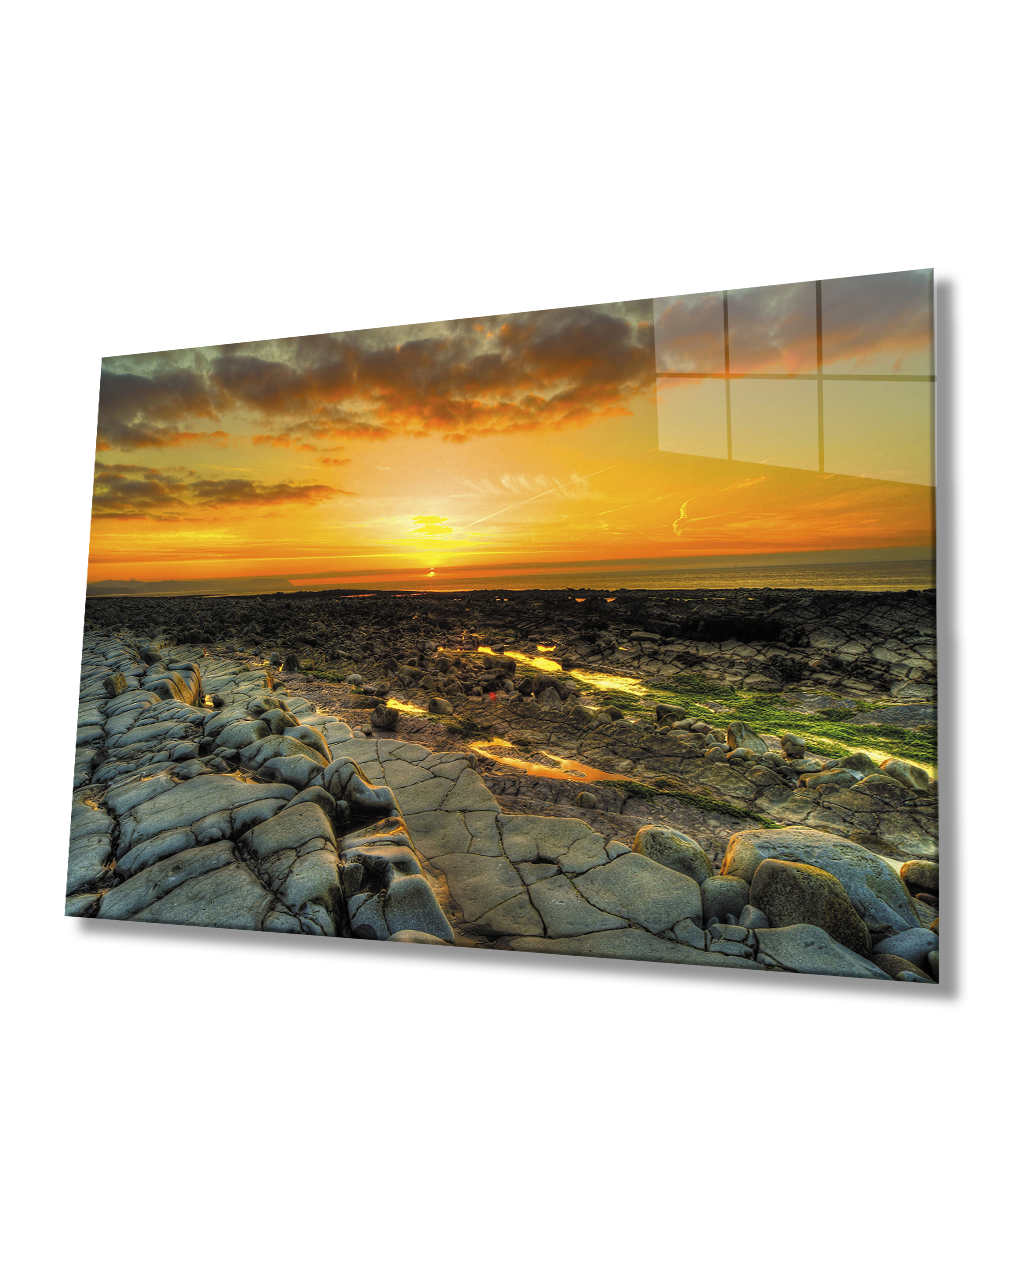 Gün Batımı Taşlar Cam Tablo  4mm Dayanıklı Temperli Cam Sunset Stones Glass Table 4mm Durable Tempered Glass